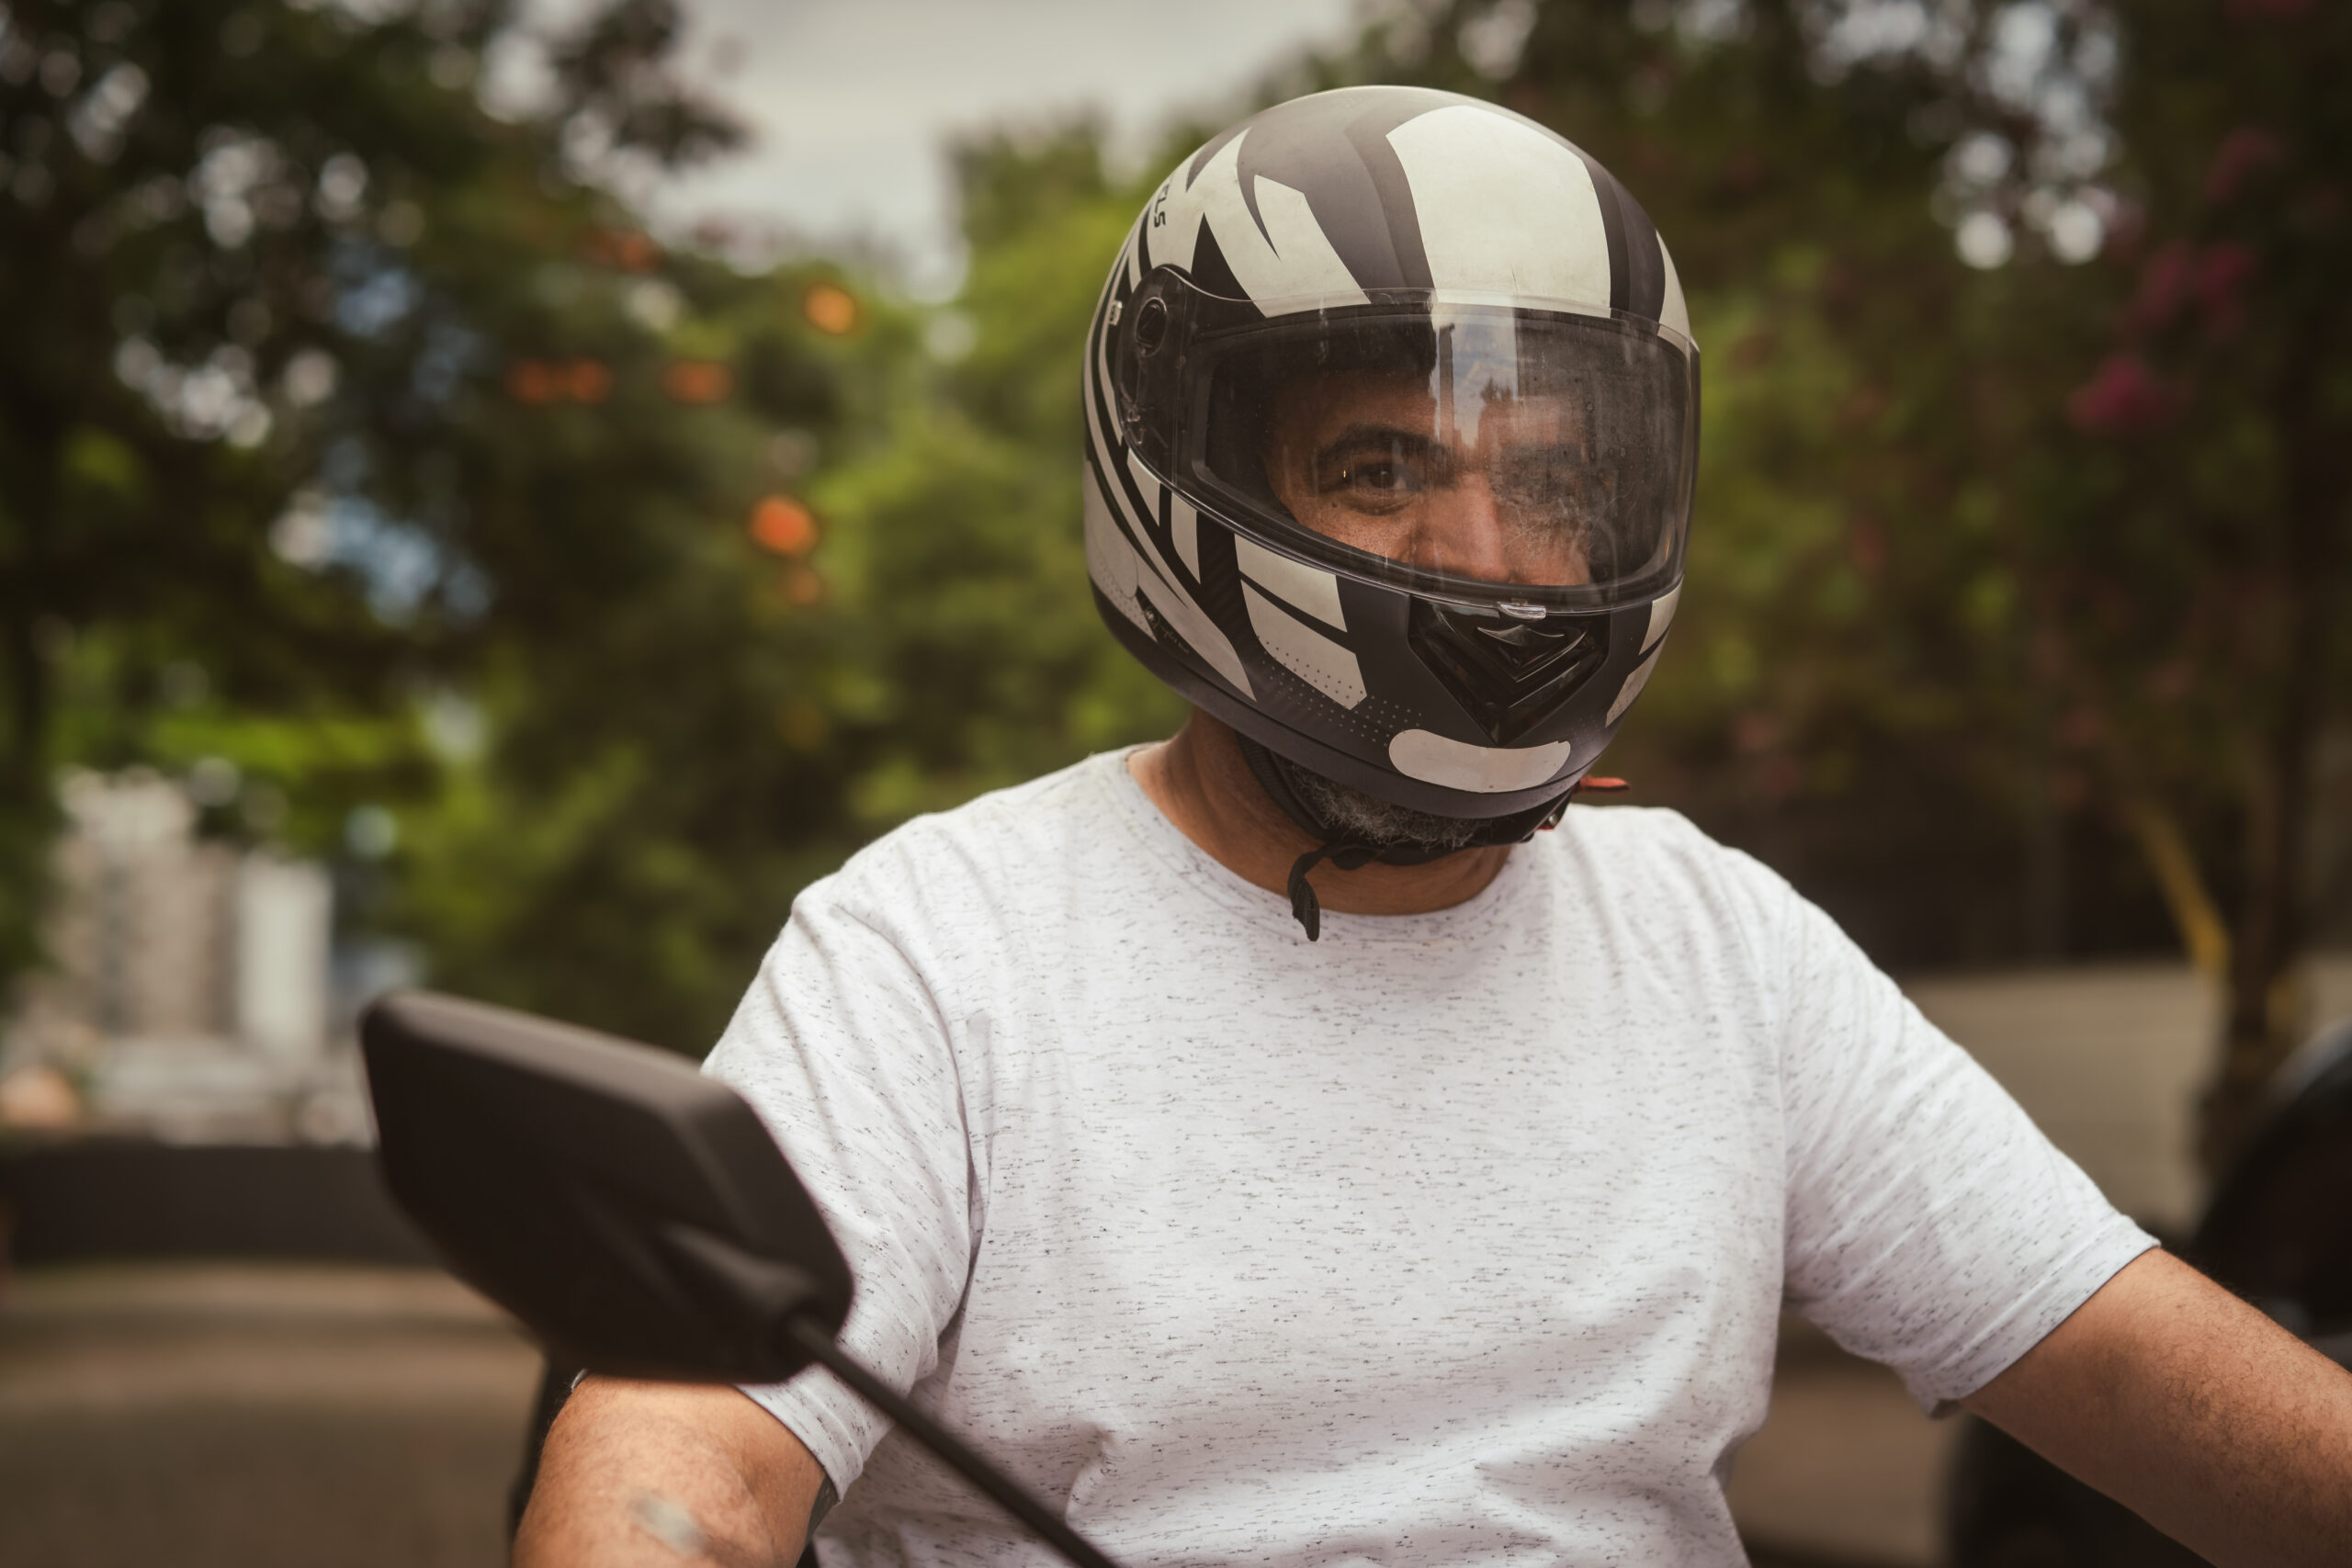 Acessórios para moto: 11 itens para facilitar a sua vida